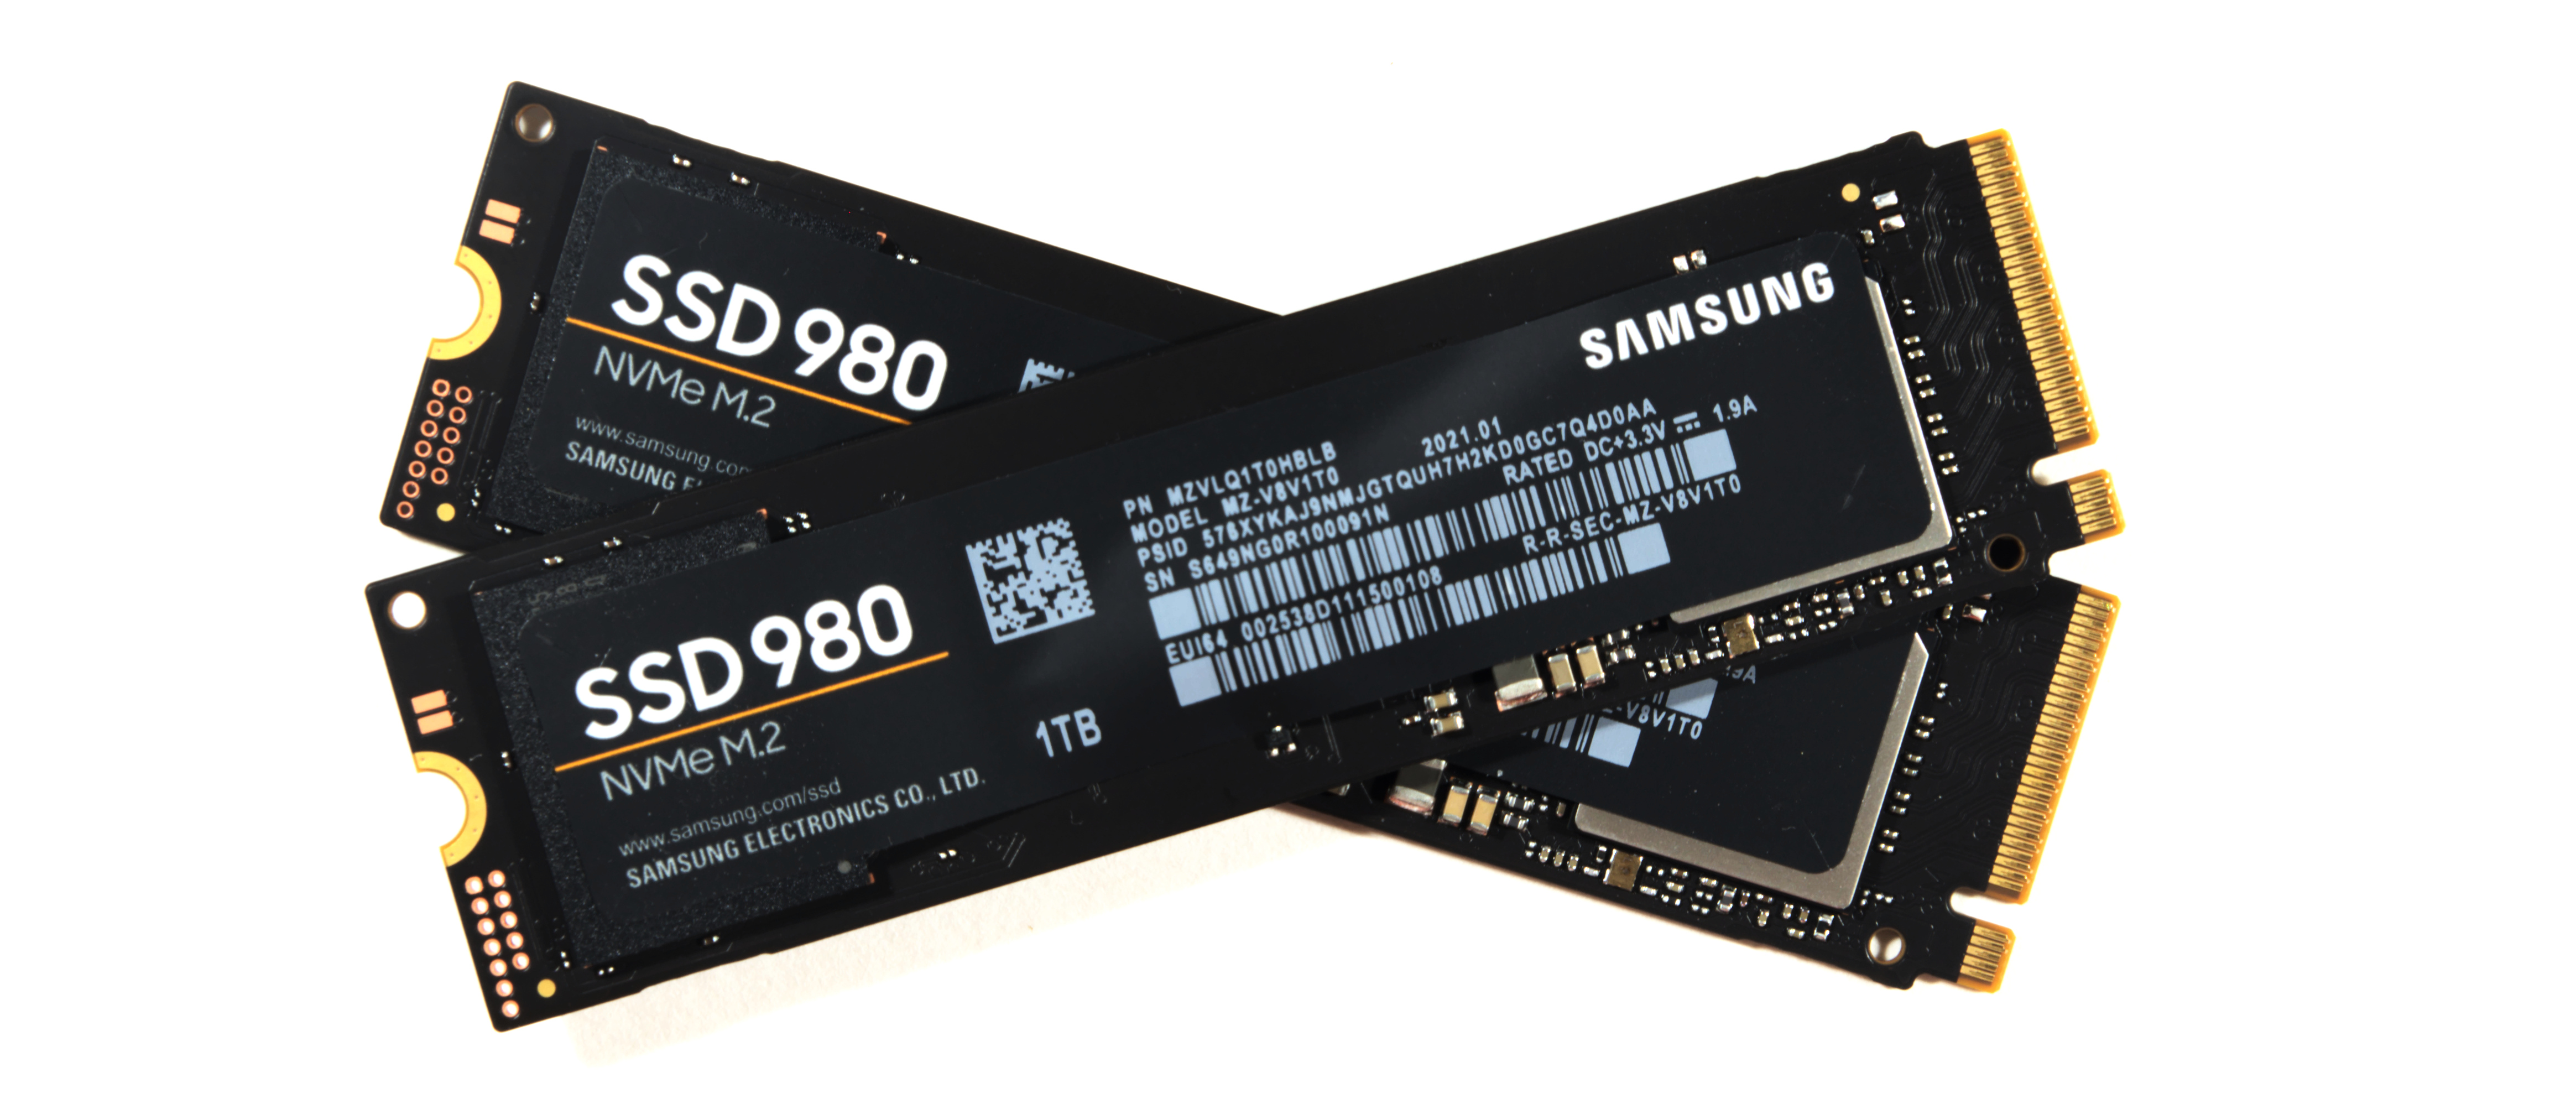 2021年11月購入状態新品未開封 サムスン  SSD 980 M.2 1.0TB MZ-V8V1T0B